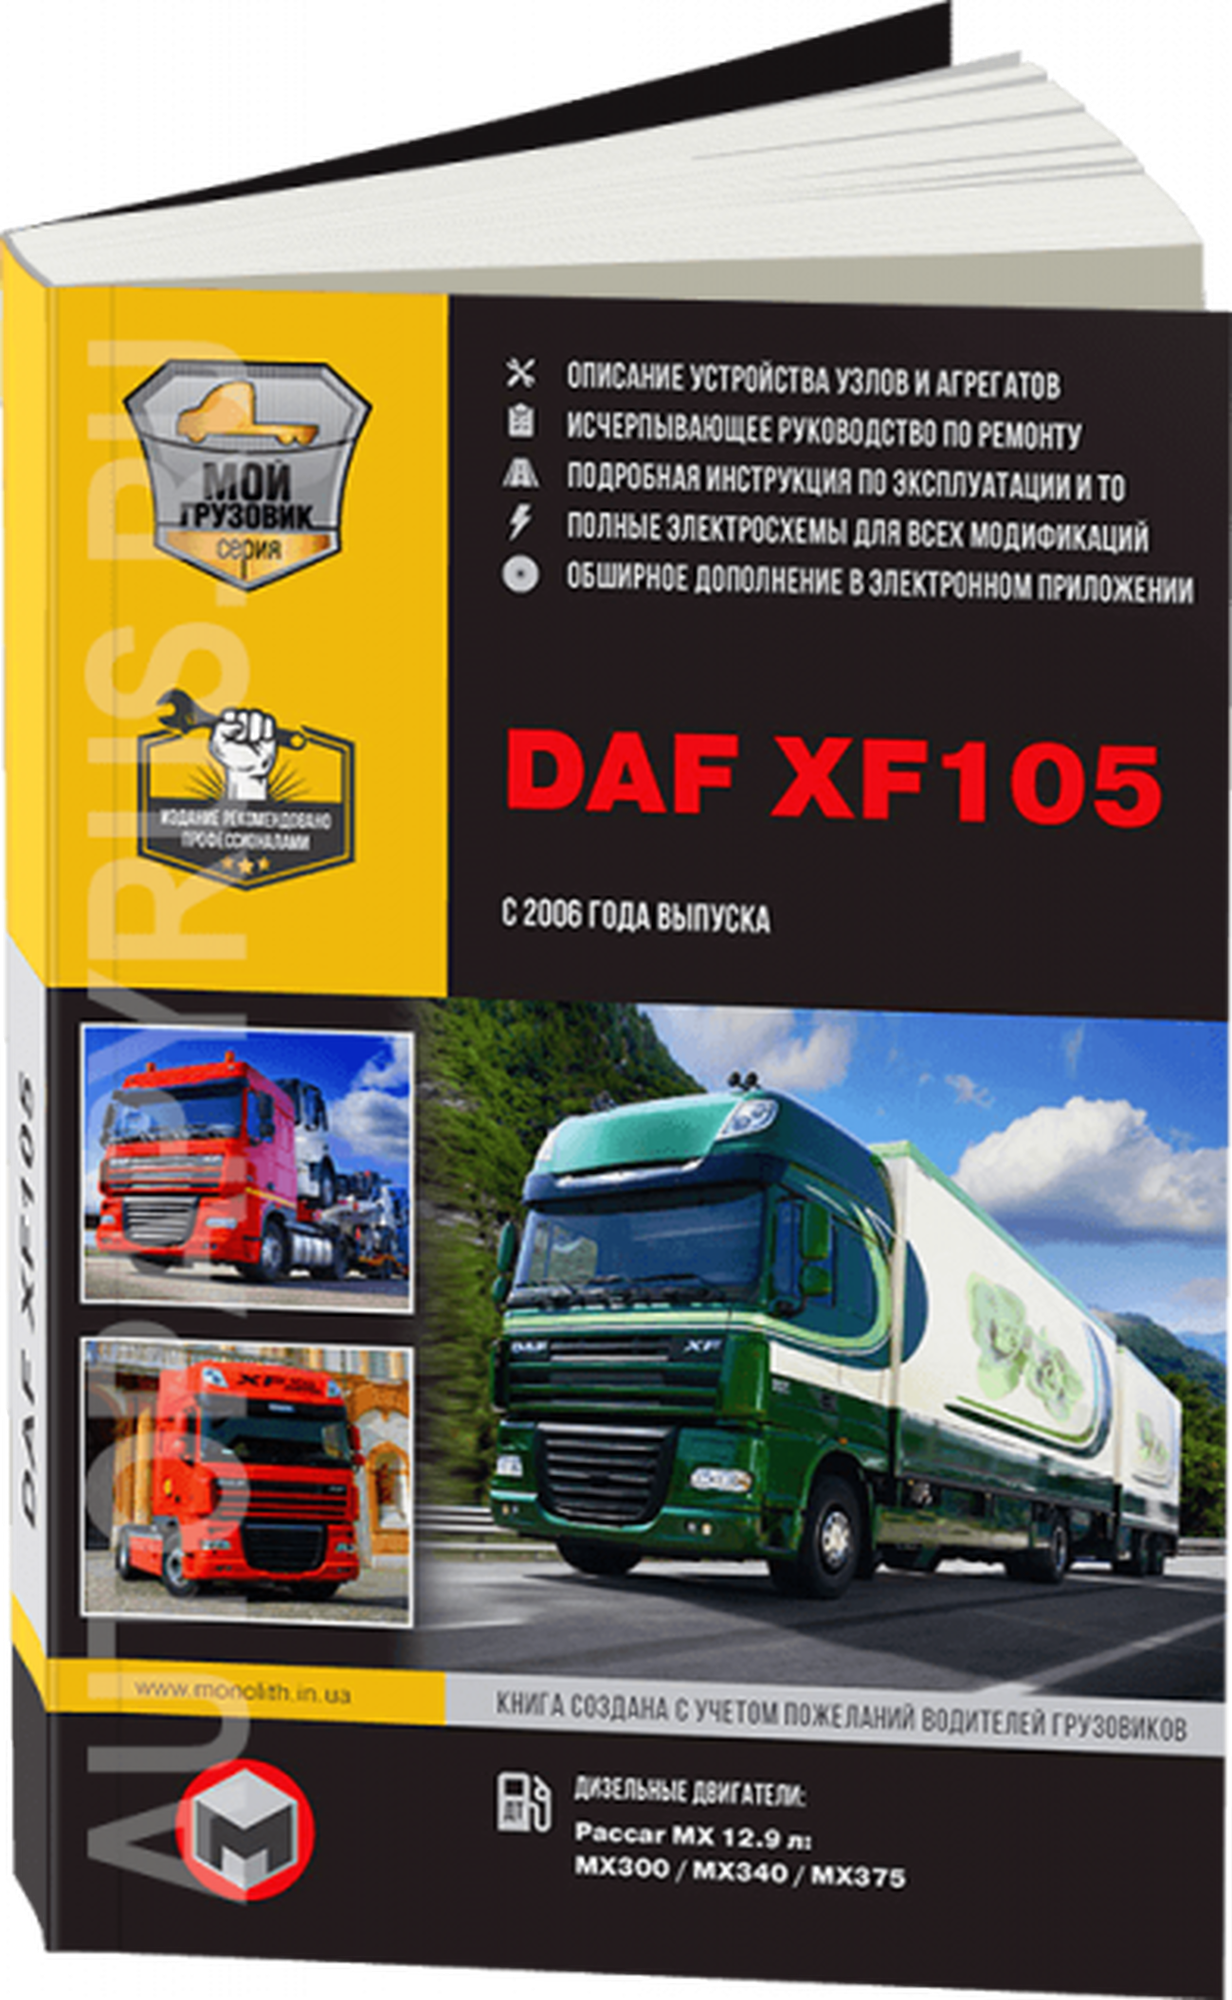 Автокнига с диском: руководство / инструкция по эксплуатации и техническому обслуживанию грузовых автомобилей DAF XF105 дизель c 2006 года выпуска, 978-617-537-141-1, издательство Монолит